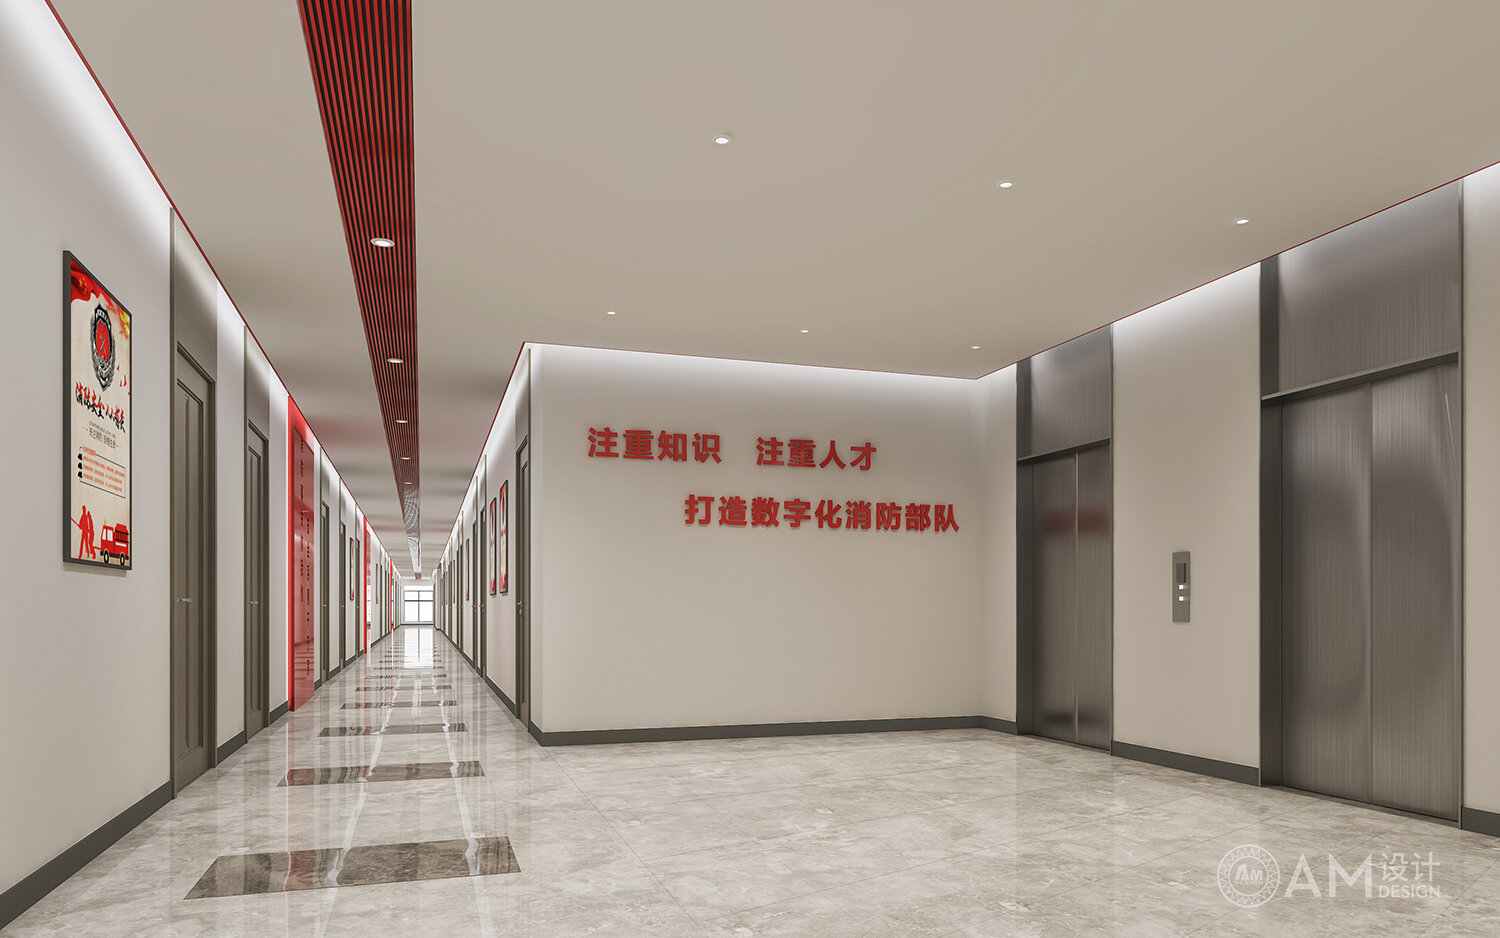 AM设计 | 北京市消防救援总队机关走廊设计